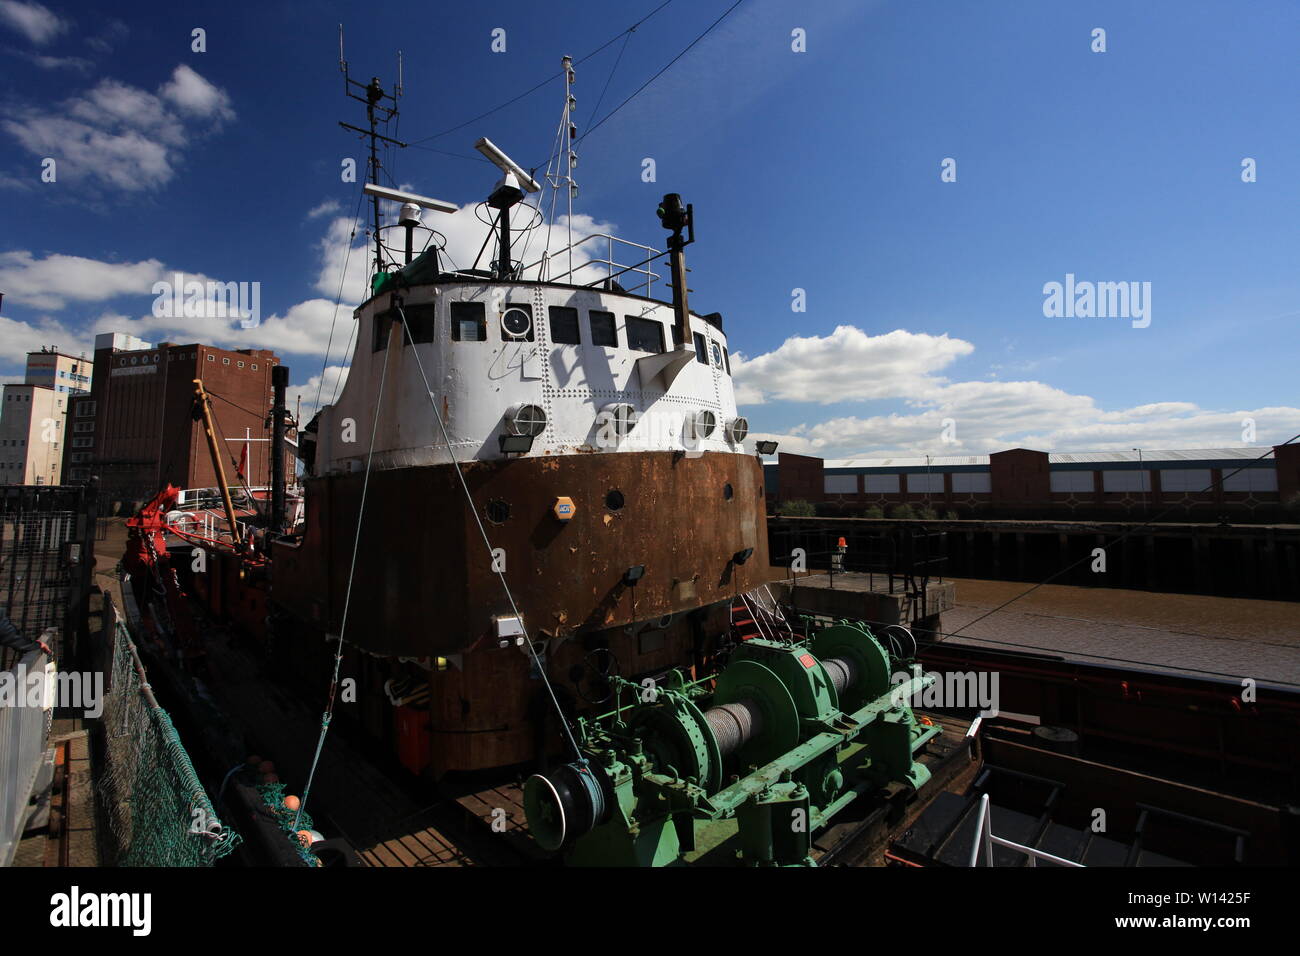 Sidewinder fishing trawler, Kingston upon Hull Stock Photo